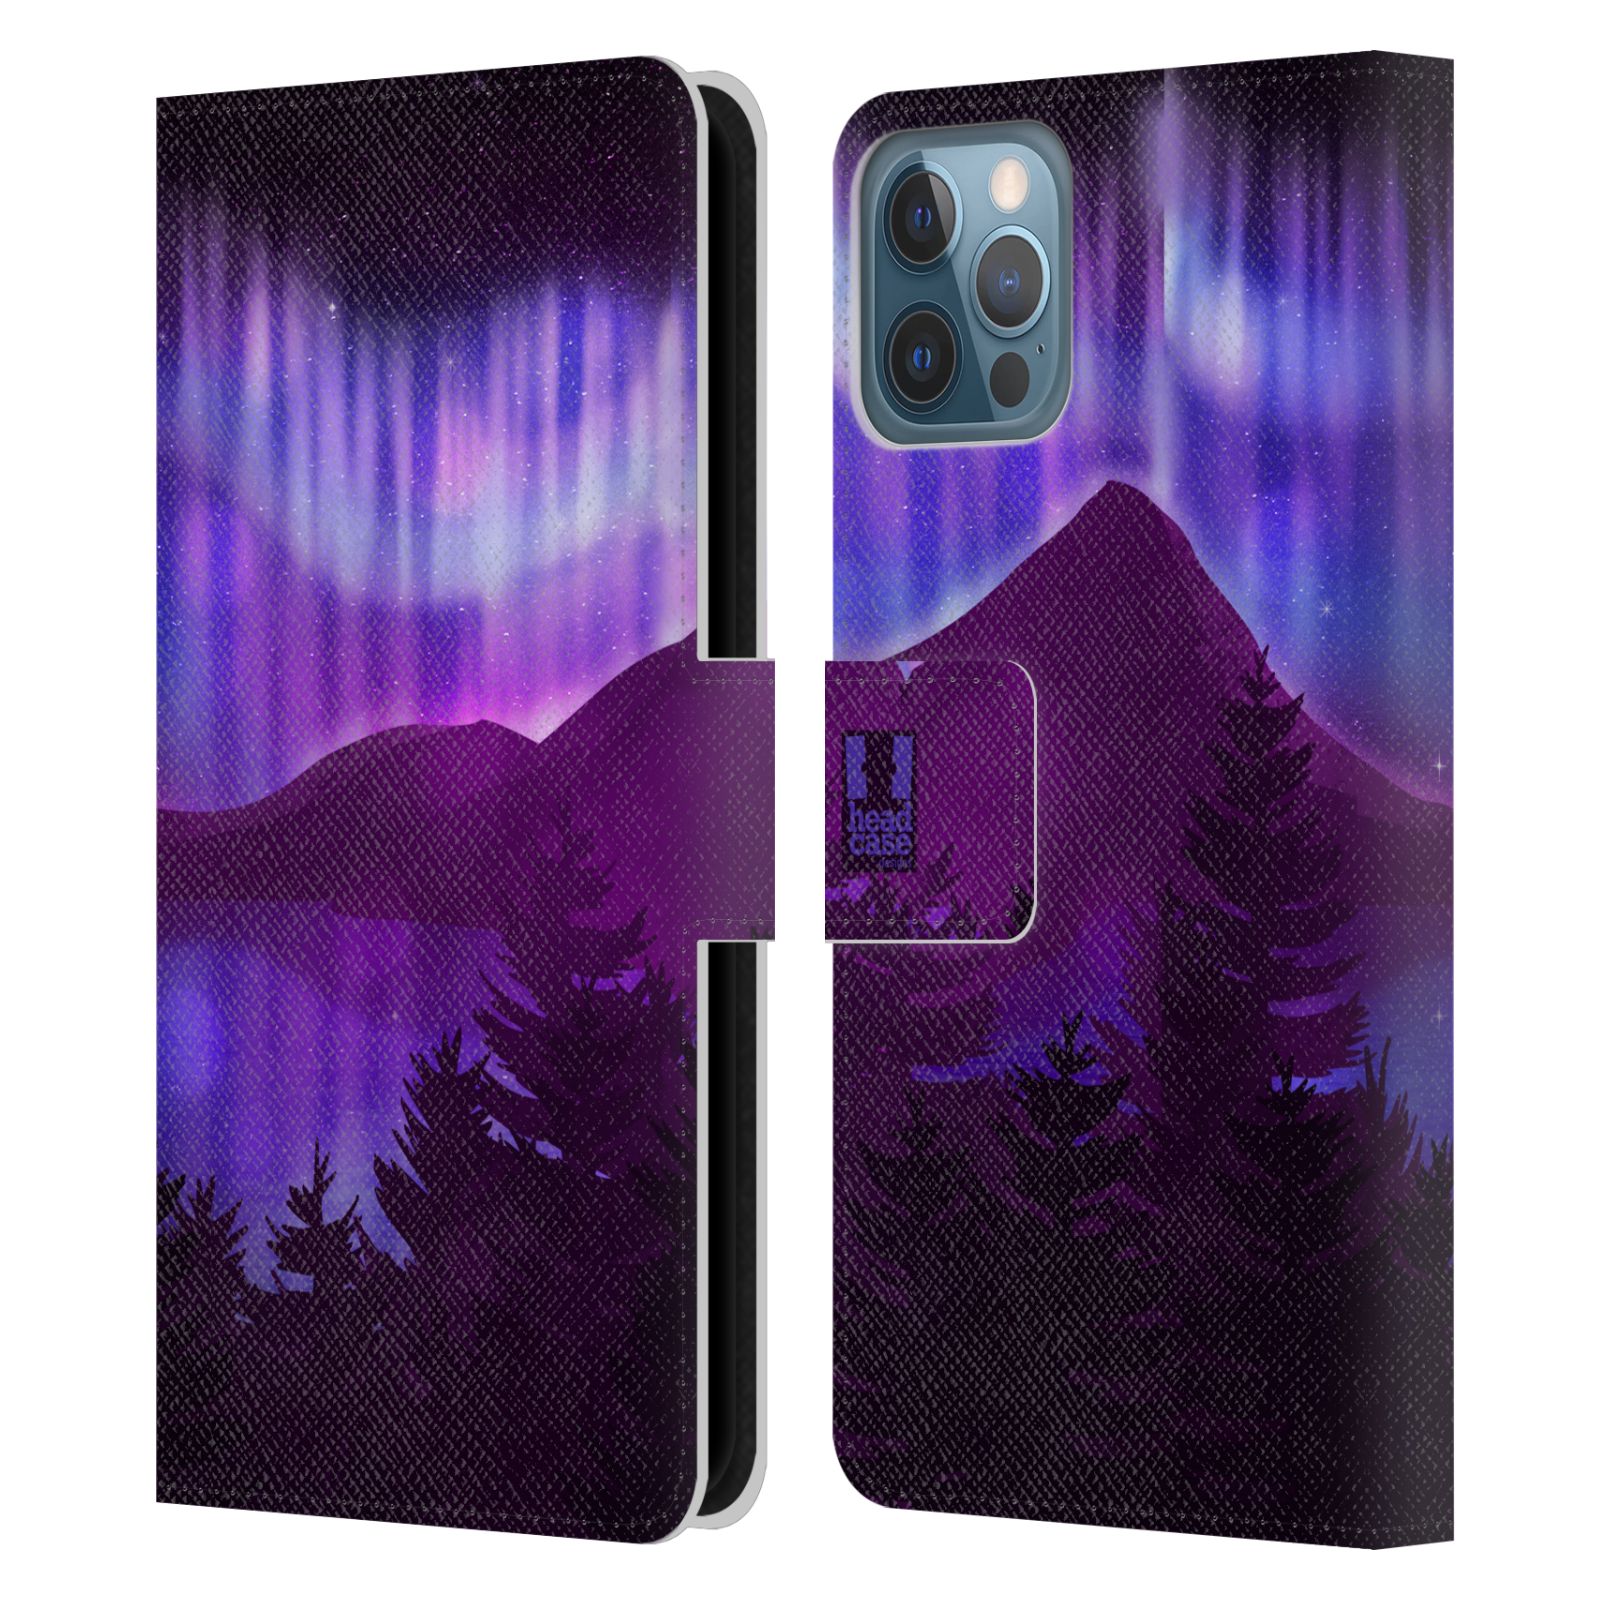 Pouzdro na mobil Apple Iphone 12 / 12 Pro - HEAD CASE - Hory a lesy fialový odstín